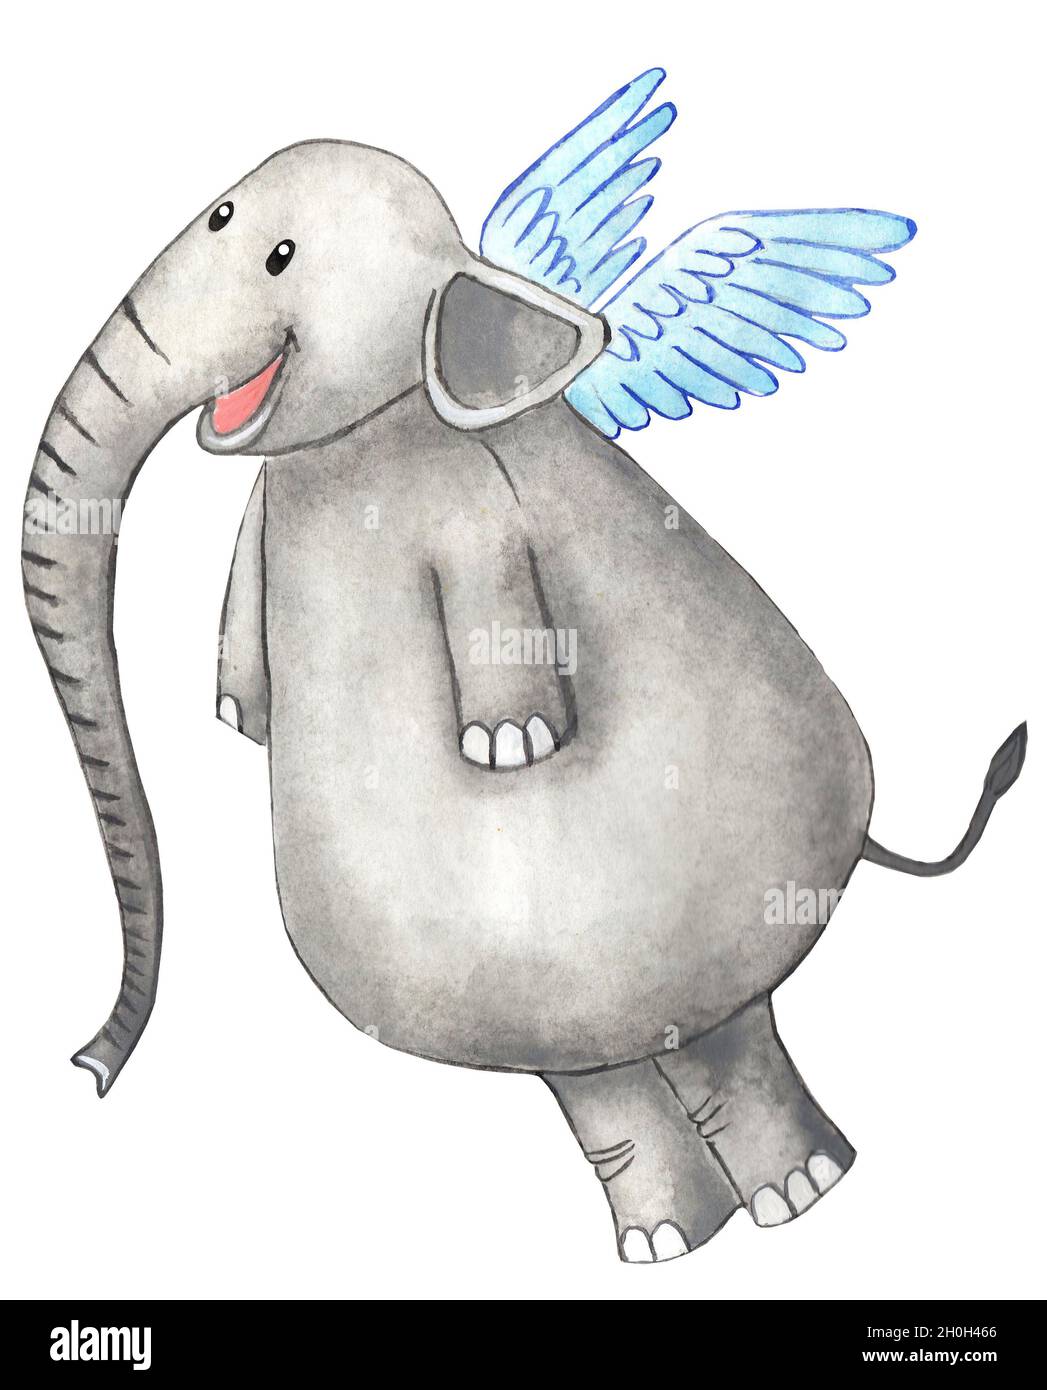 Un éléphant joyeux avec des ailes derrière son dos et un long tronc.Illustration puérile dessinée à la main.Isolé sur un fond blanc. Banque D'Images